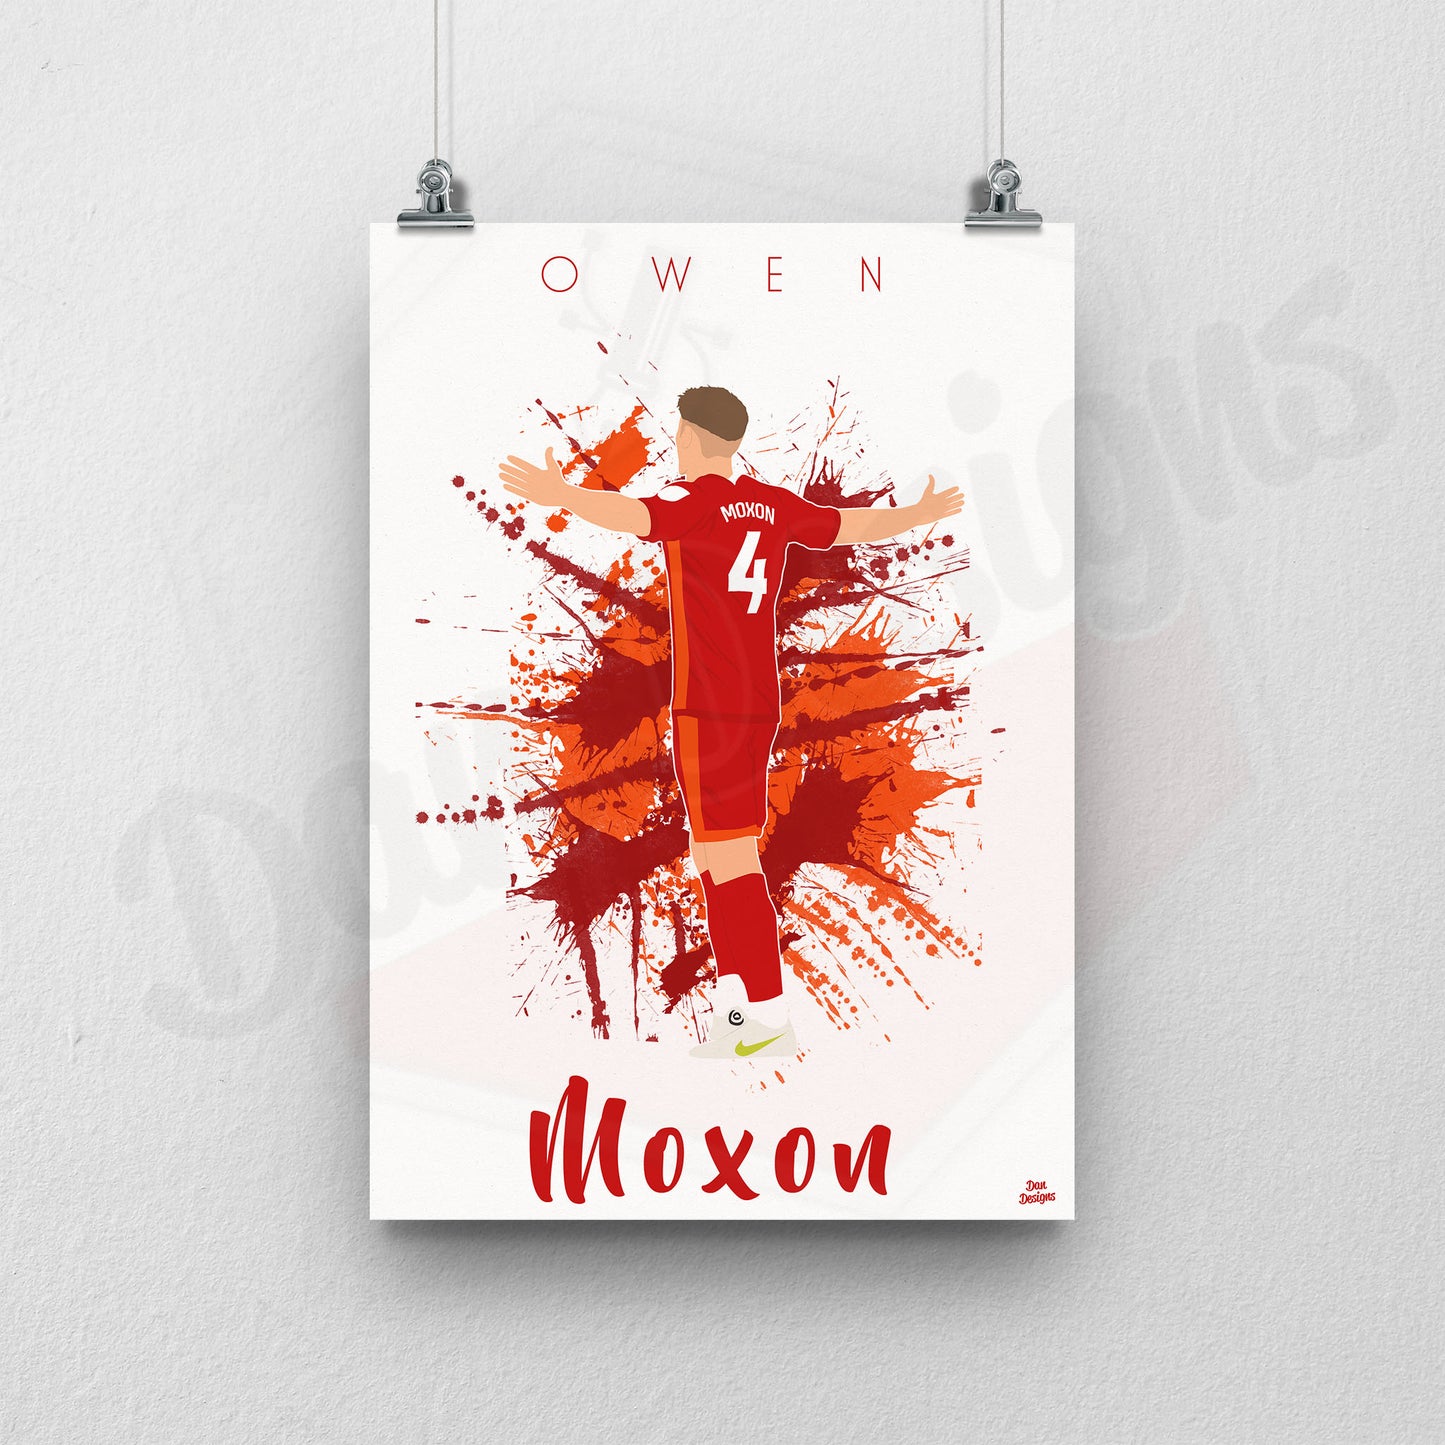 Owen Moxon Away Print